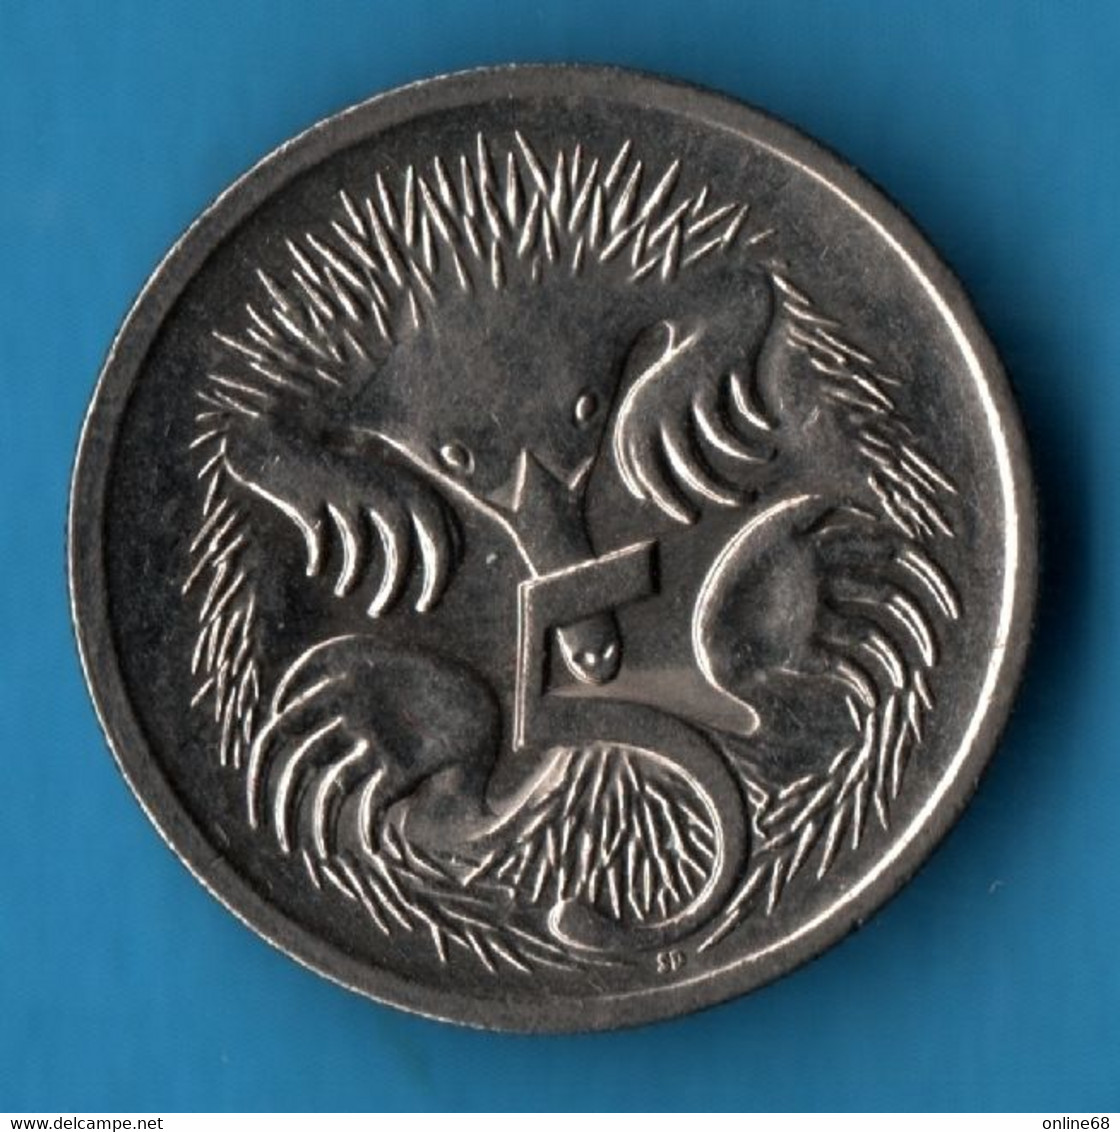 AUSTRALIA 5 CENTS 2006 KM# 401 Echidna  QEII - 5 Cents